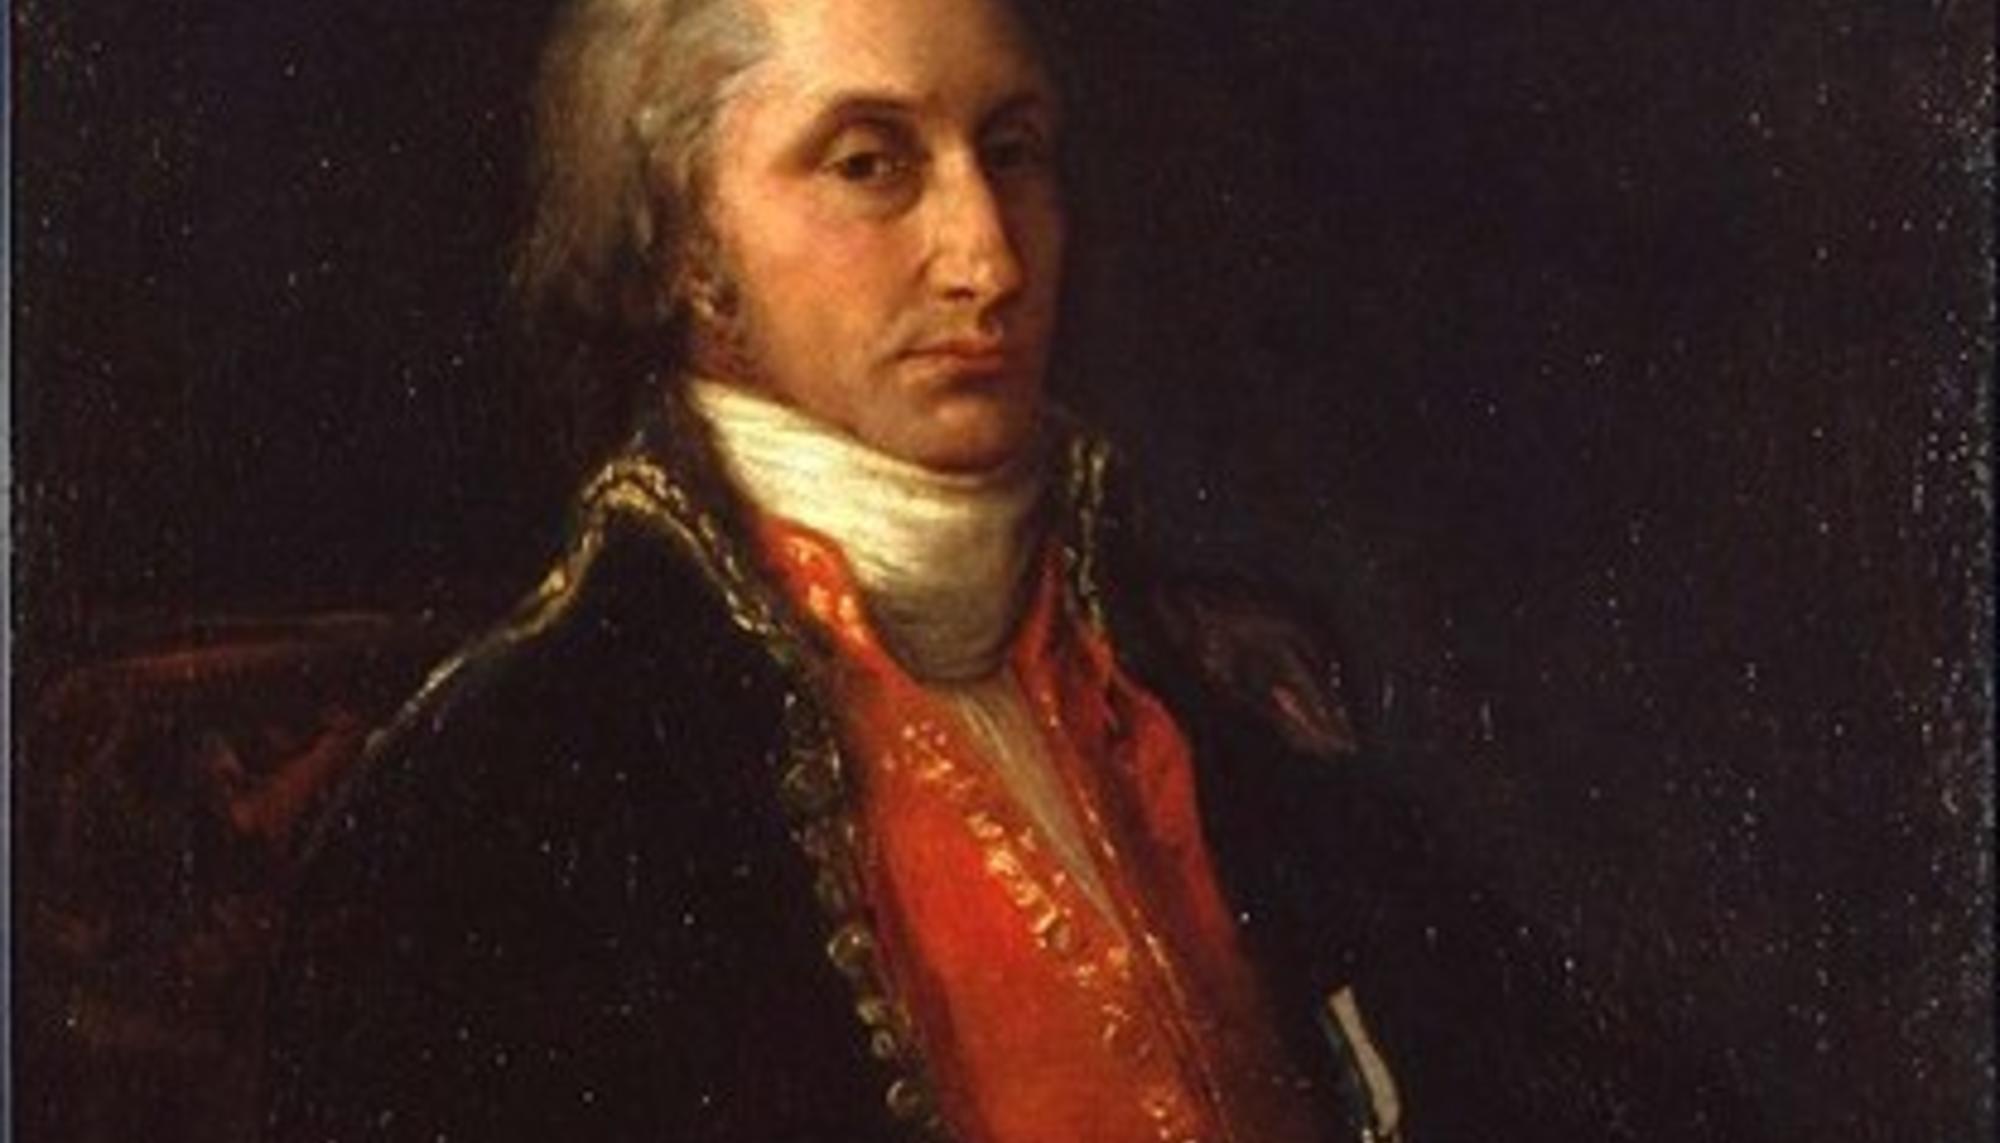 Retrato de Antonio Raimundo Ibañez, Marqués de Sargadelos (Francisco de Goya). Extraido da página web da Fundación Goya